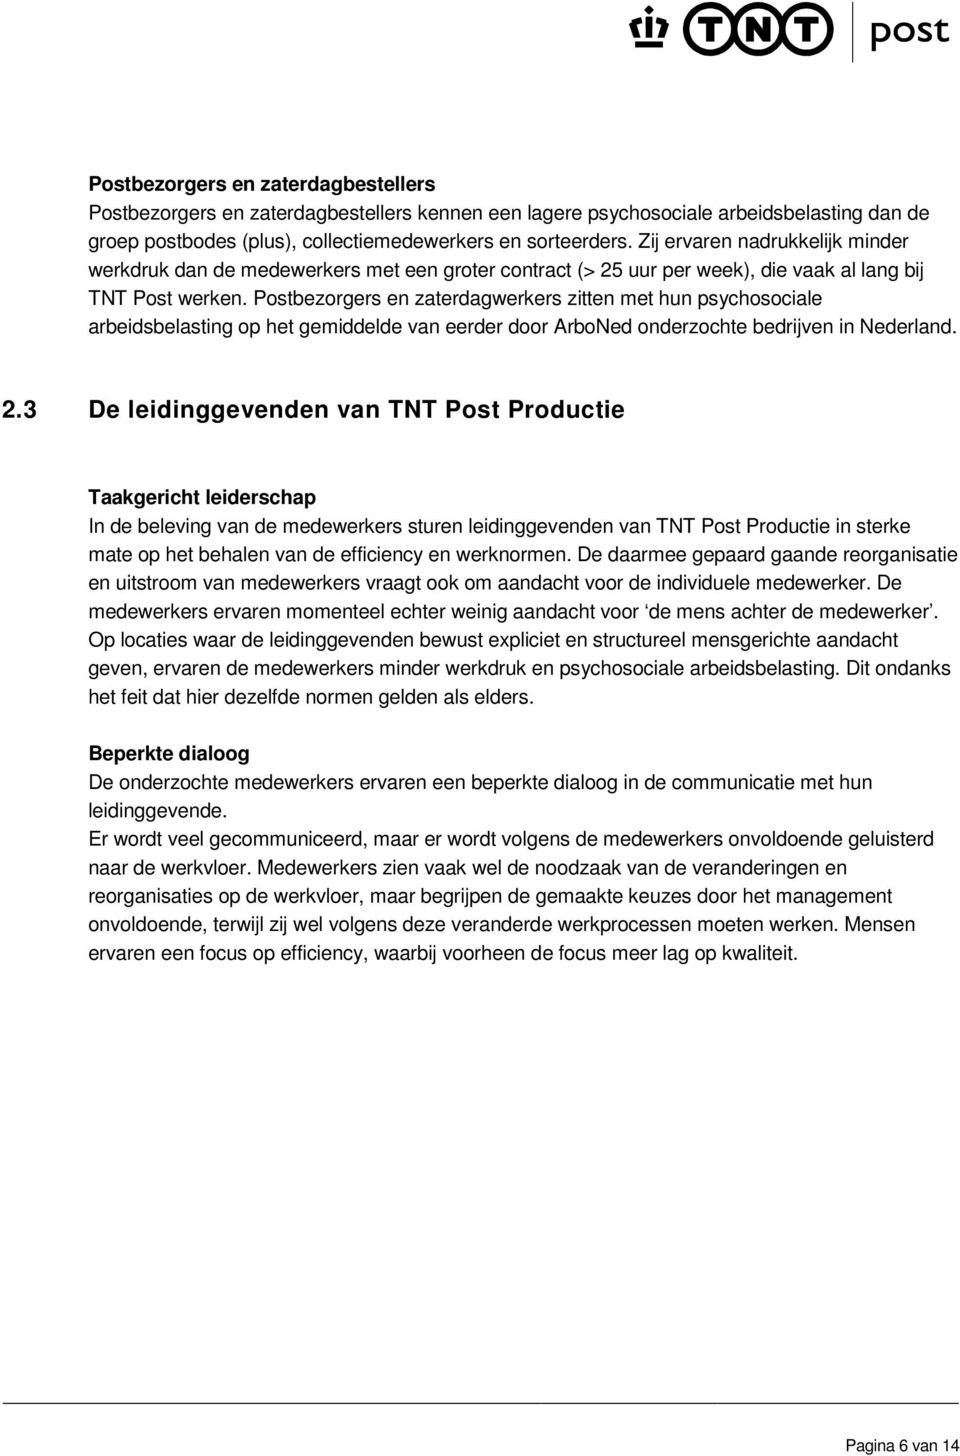 Postbezorgers en zaterdagwerkers zitten met hun psychosociale arbeidsbelasting op het gemiddelde van eerder door ArboNed onderzochte bedrijven in Nederland. 2.